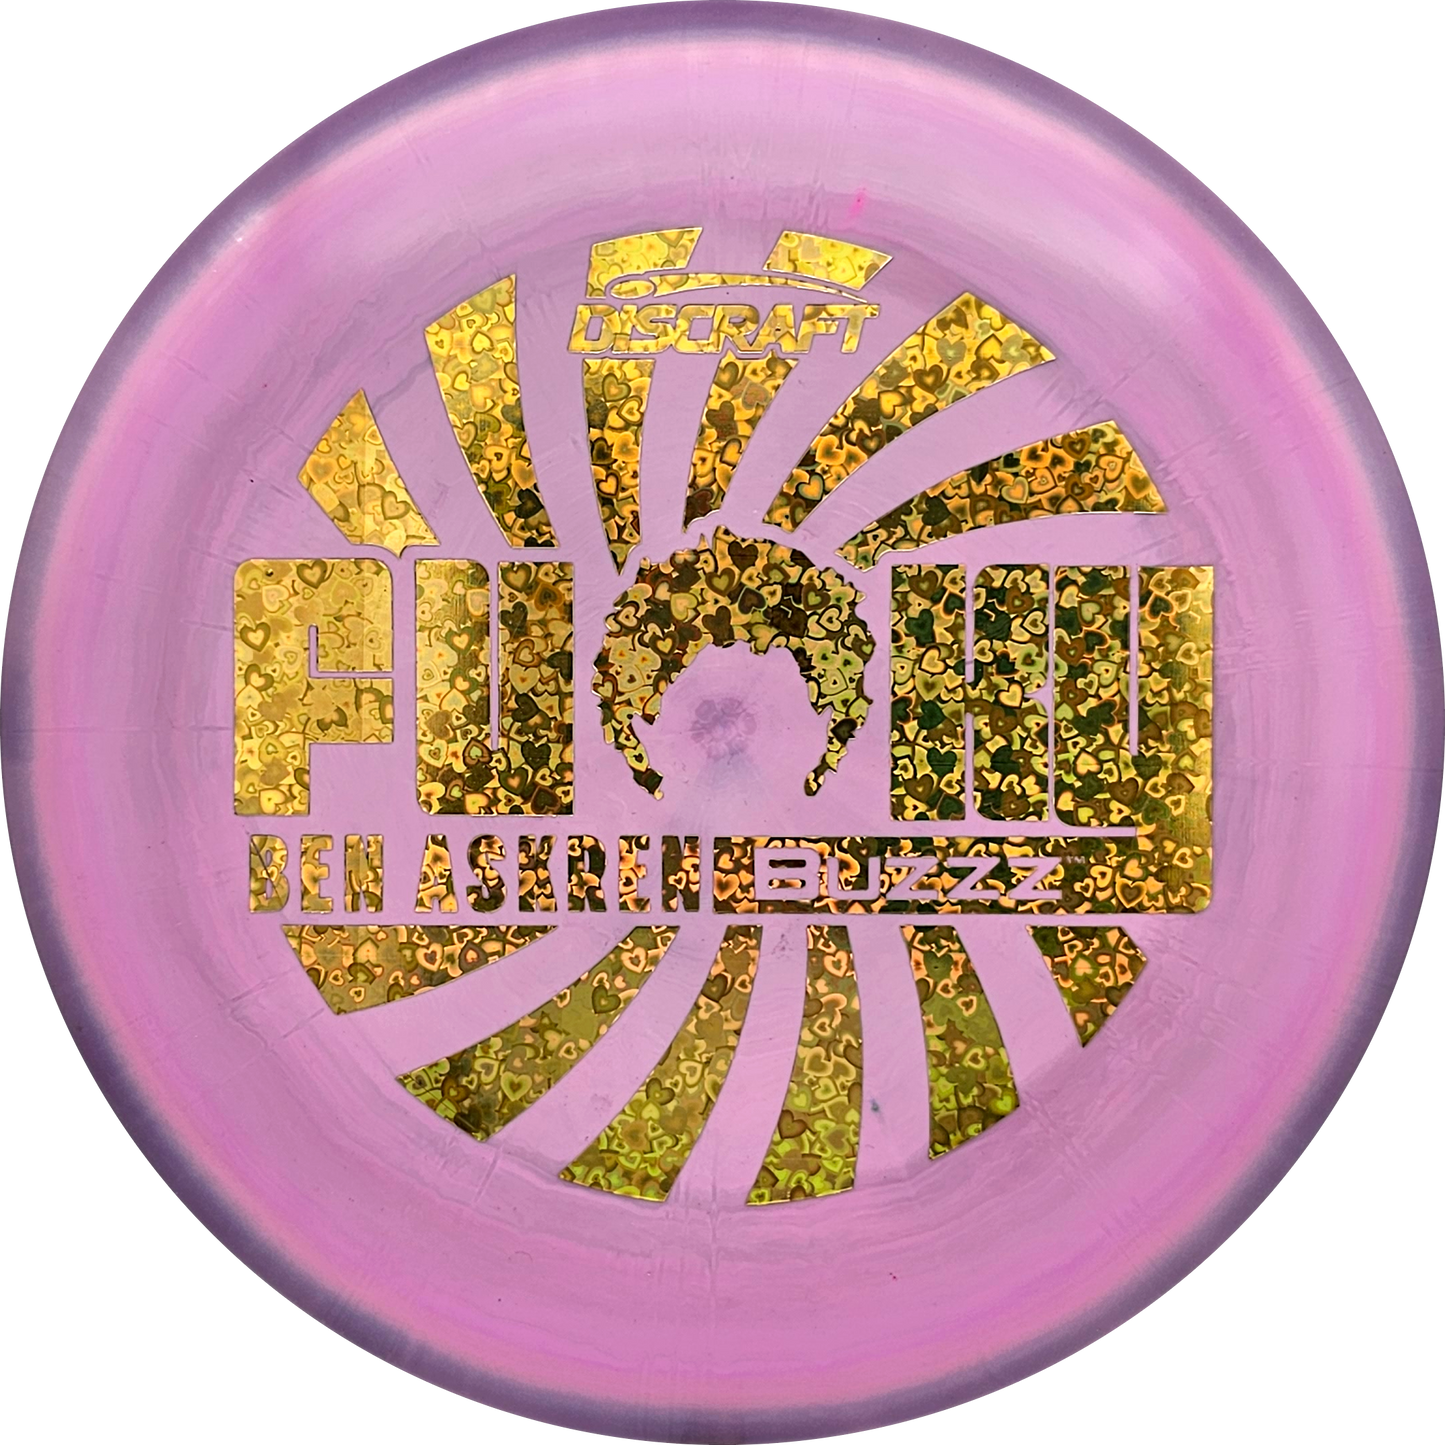 Discraft Swirl ESP Buzzz - "Funky" Ben Askren Limited Edition